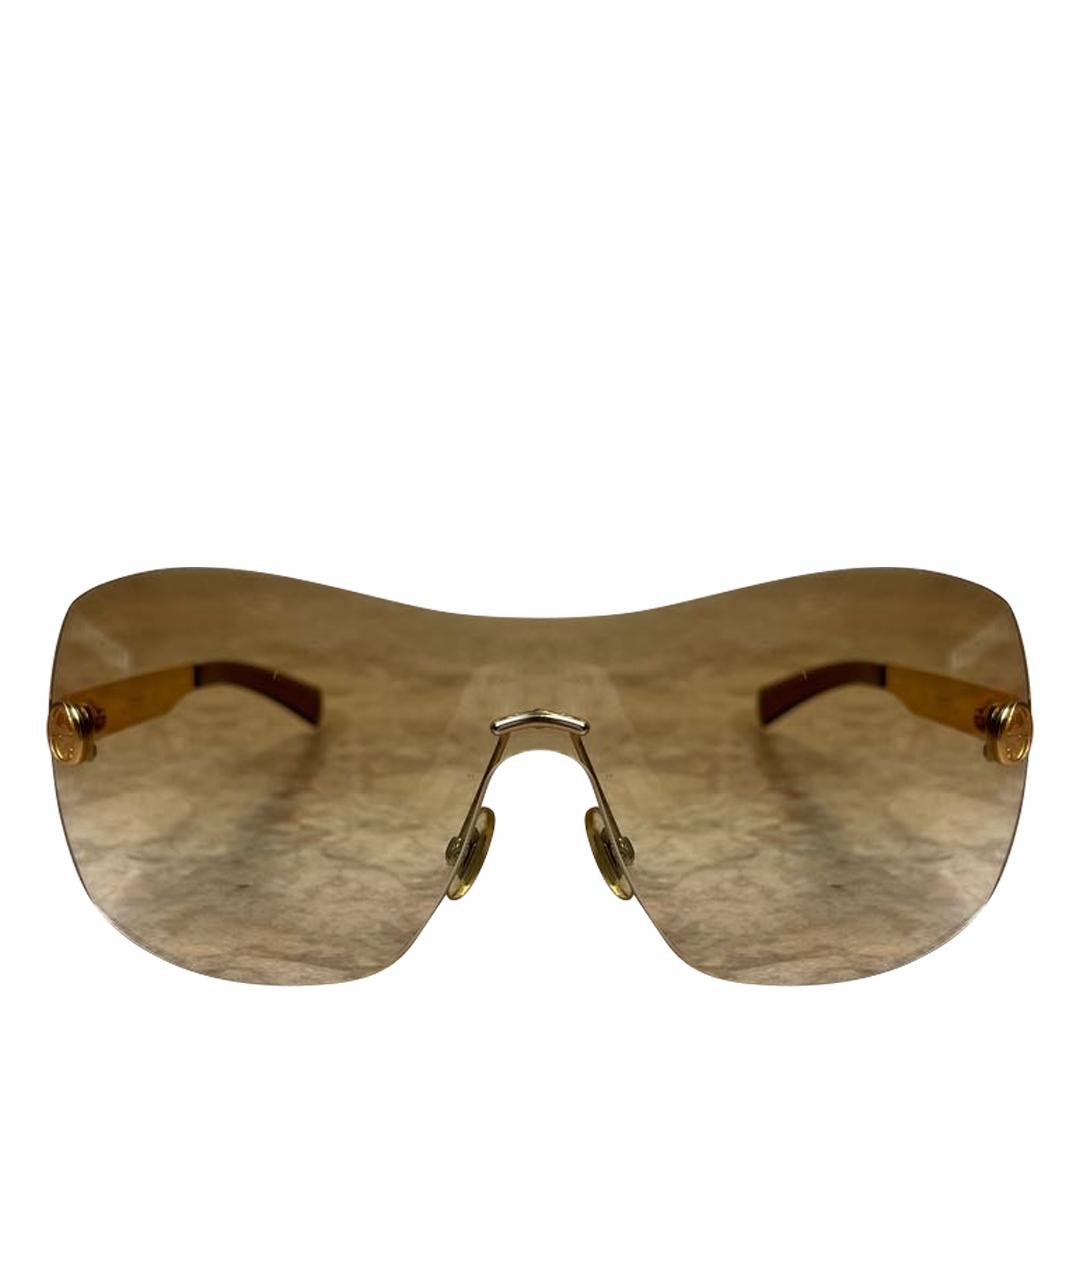 GUCCI Золотые металлические солнцезащитные очки, фото 1